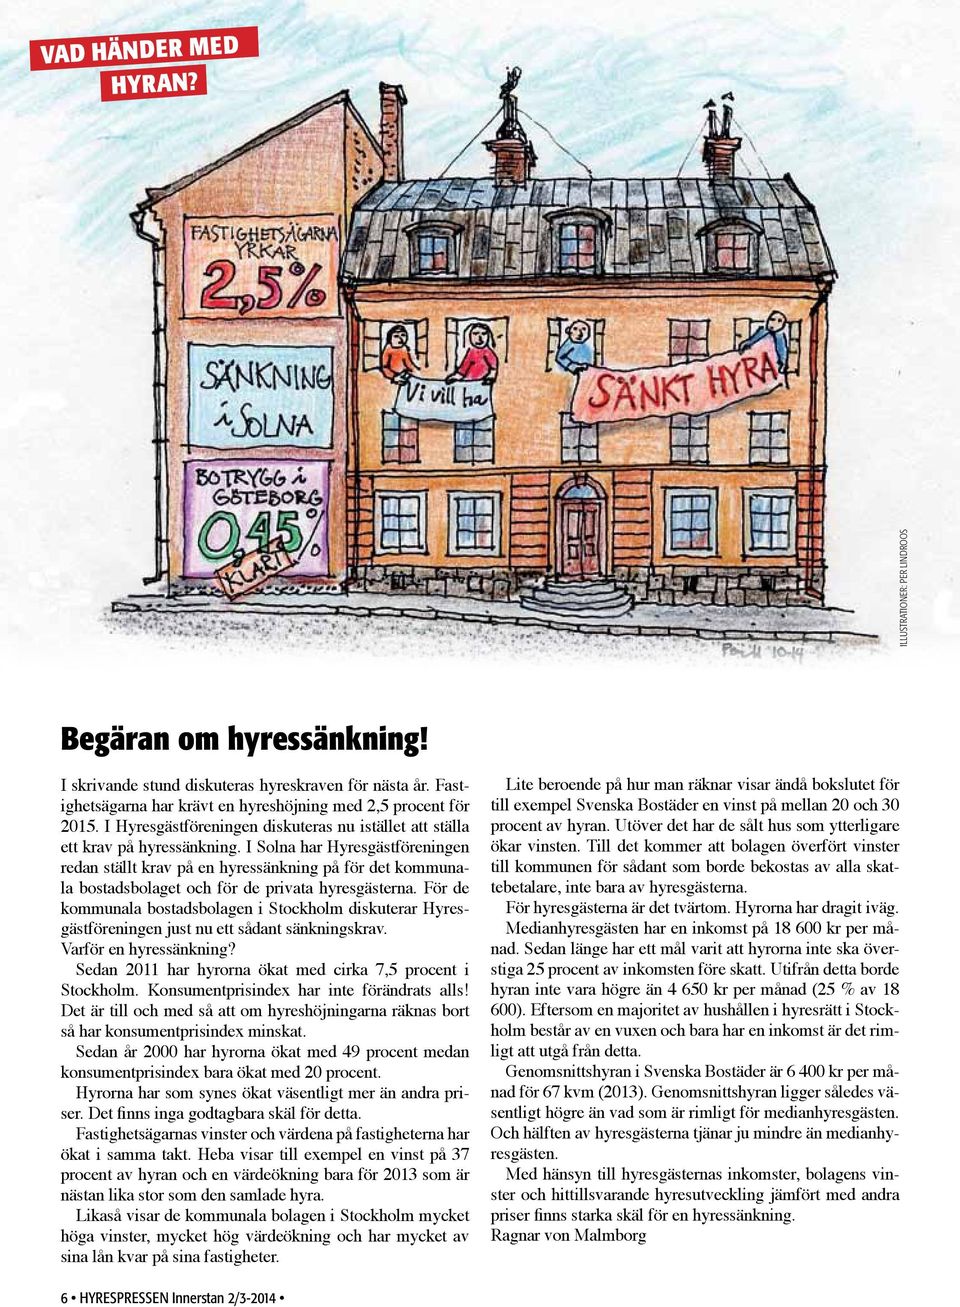 I Solna har Hyresgästföreningen redan ställt krav på en hyressänkning på för det kommunala bostadsbolaget och för de privata hyresgästerna.